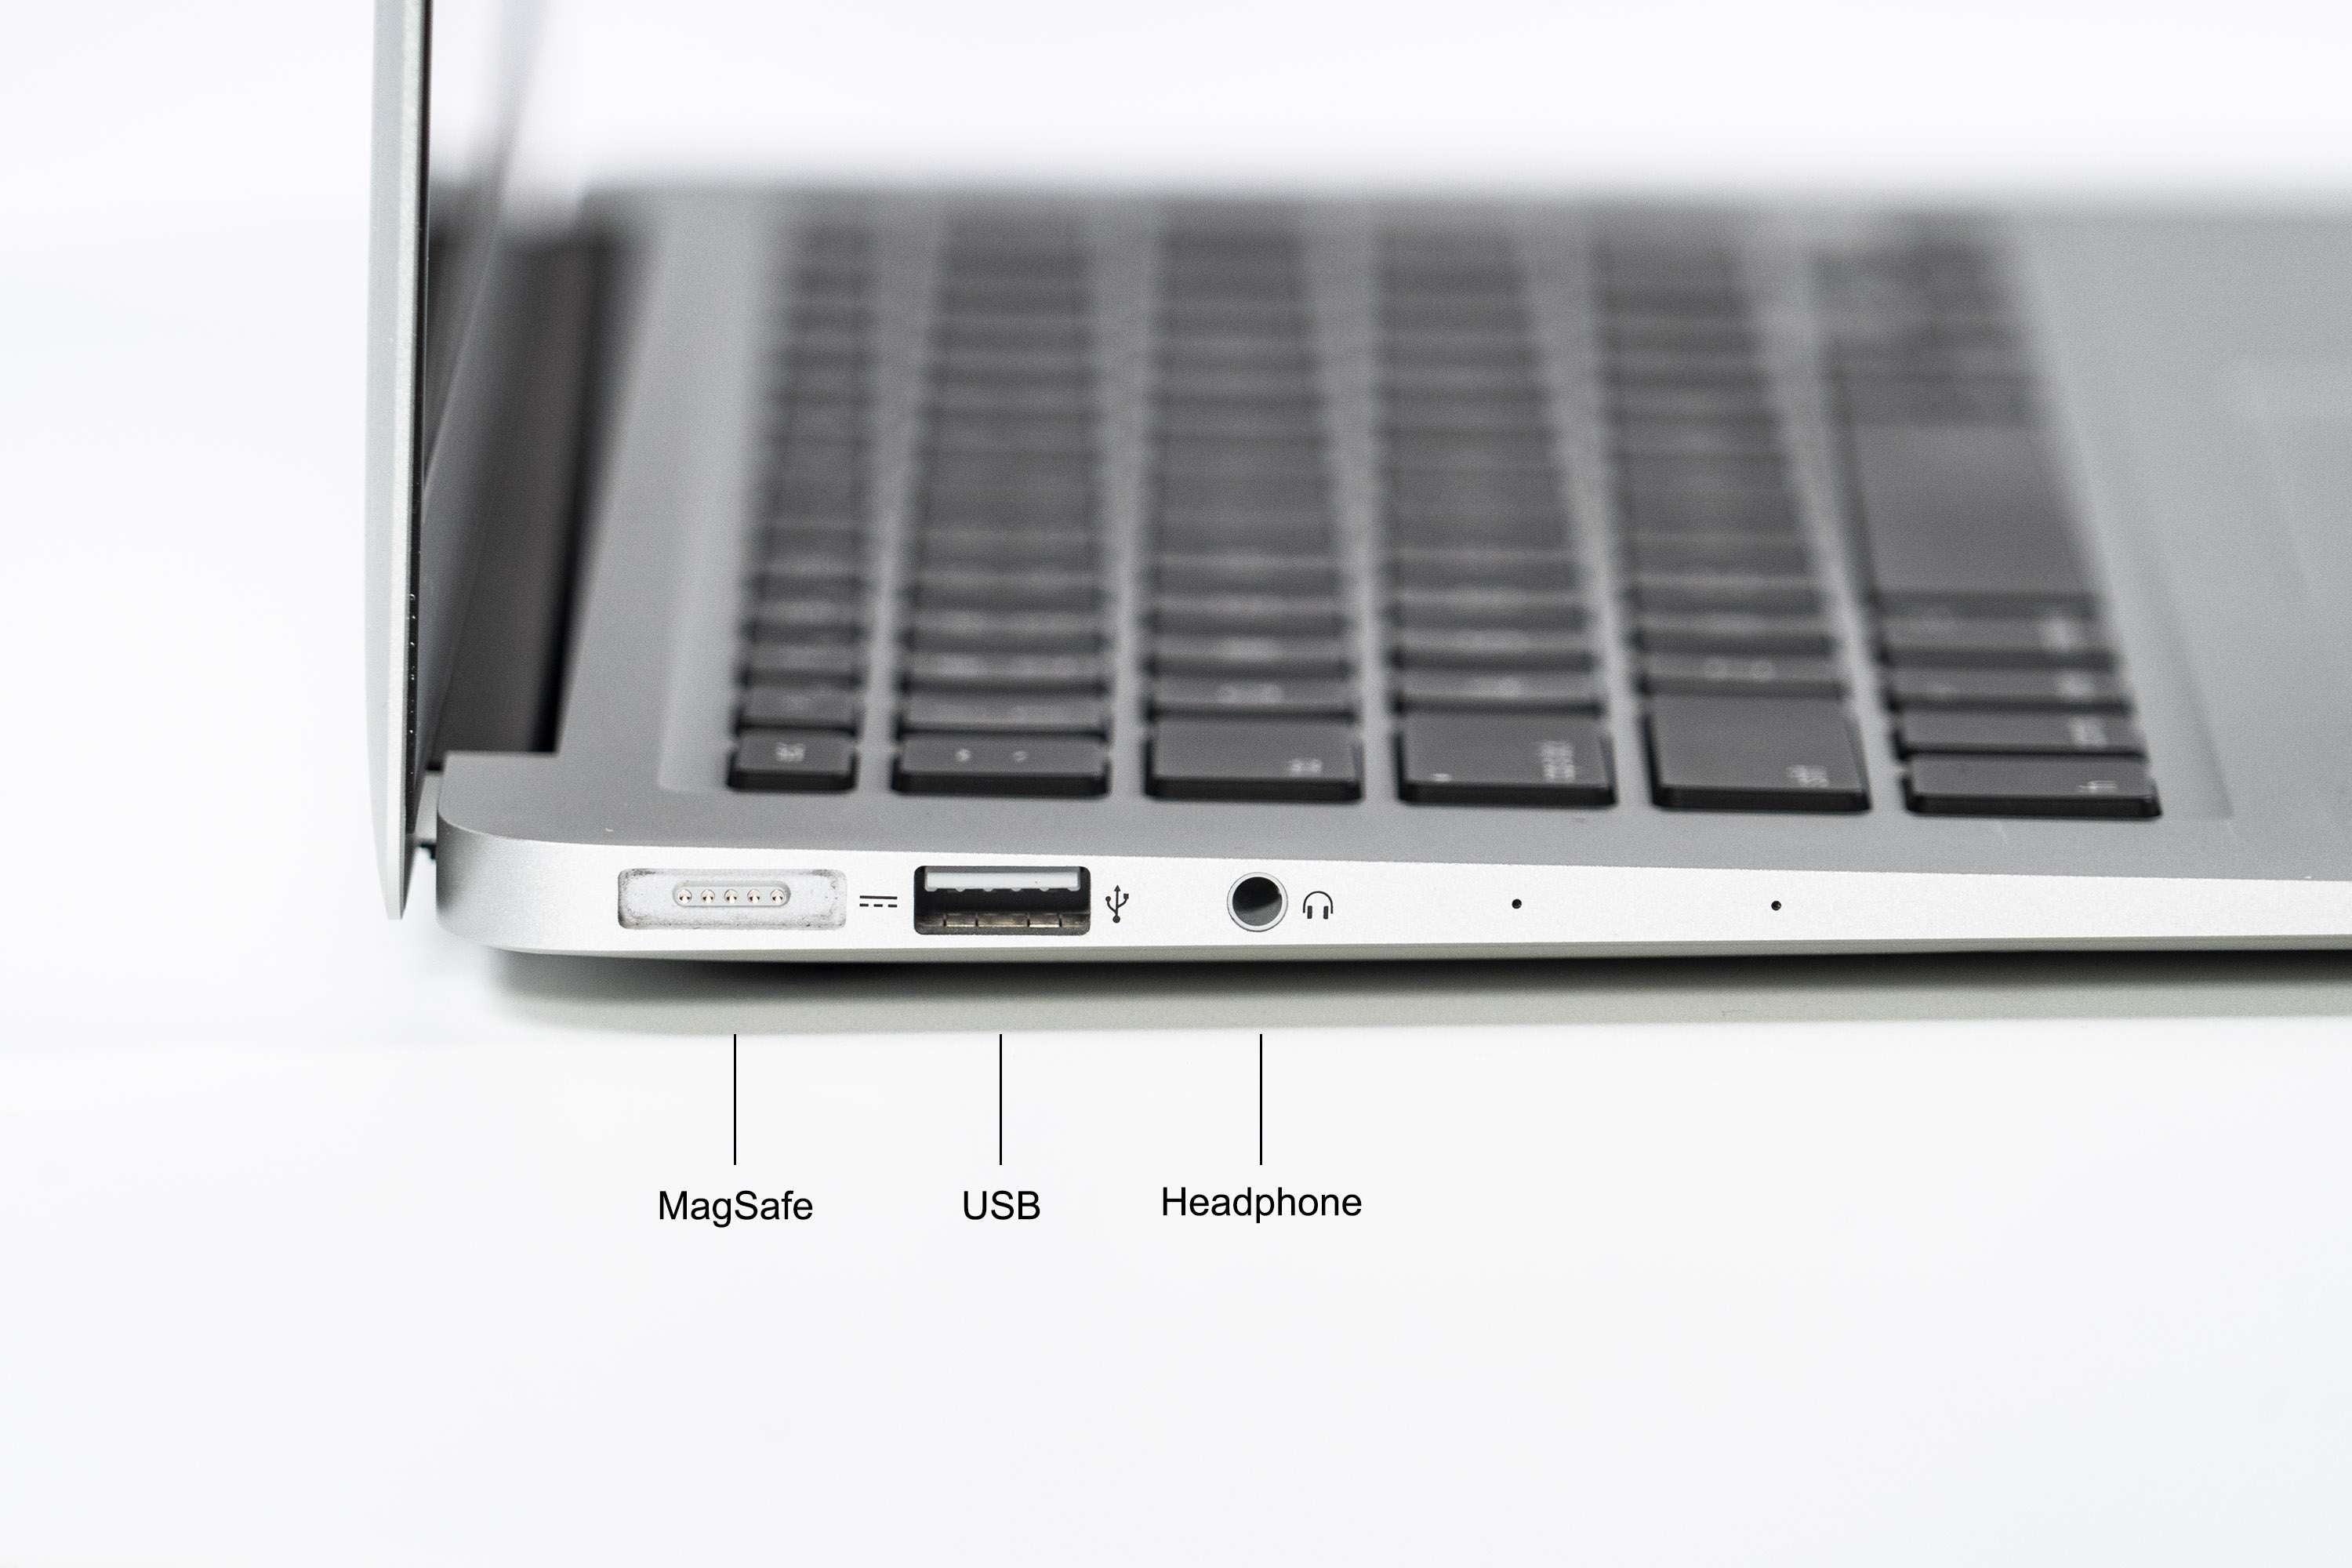 Apple MacBook Air 13-inch (Mid 2013) 1.7GHz i7 8GB RAM MD760LL/A